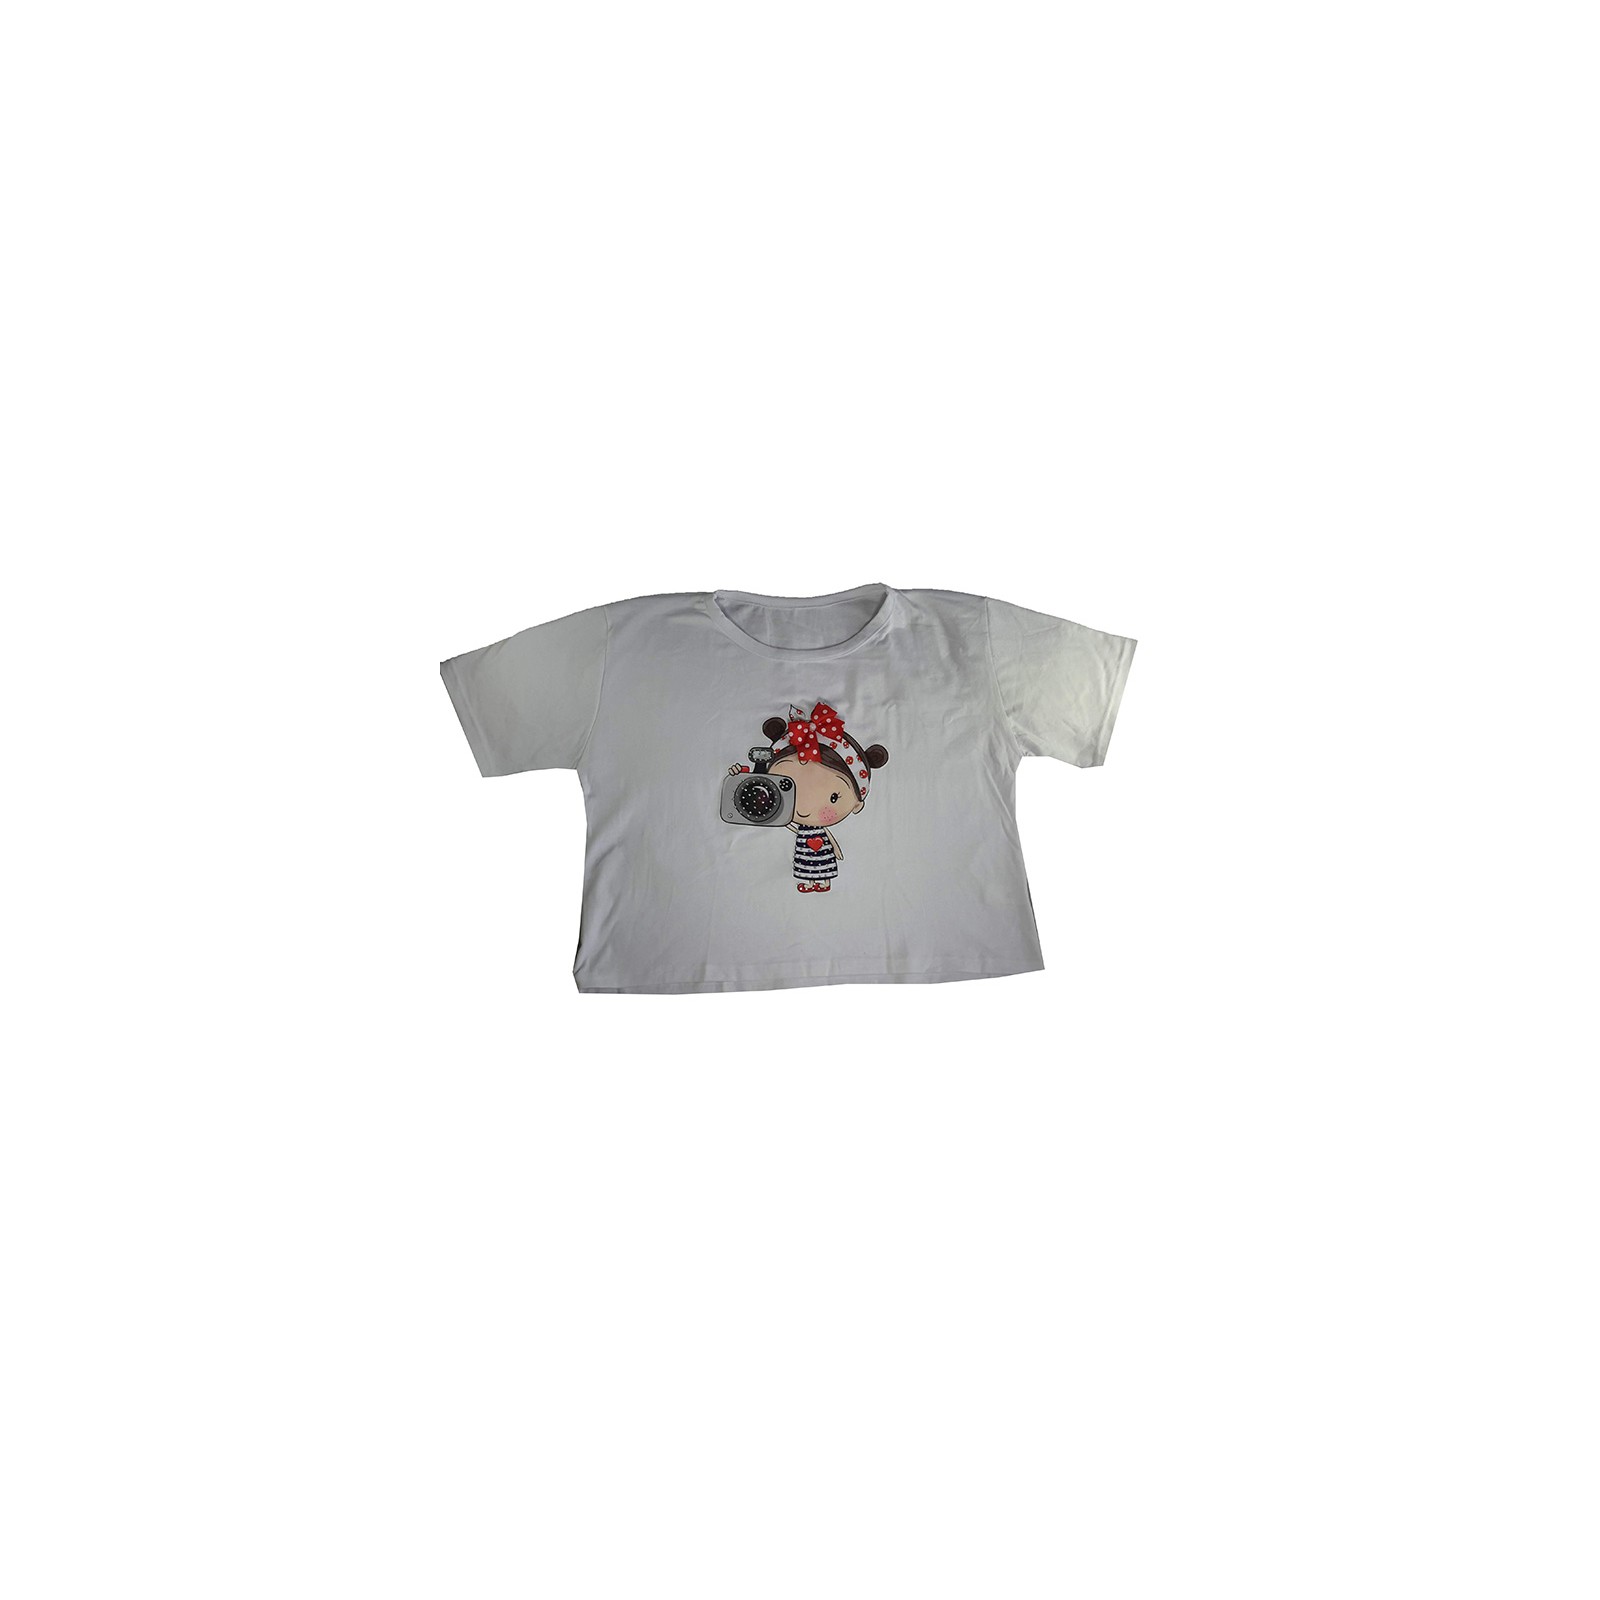 Bluson Camiseta Algodón 100% Talla Única Apliques Piedreria Perlas Ref 0185